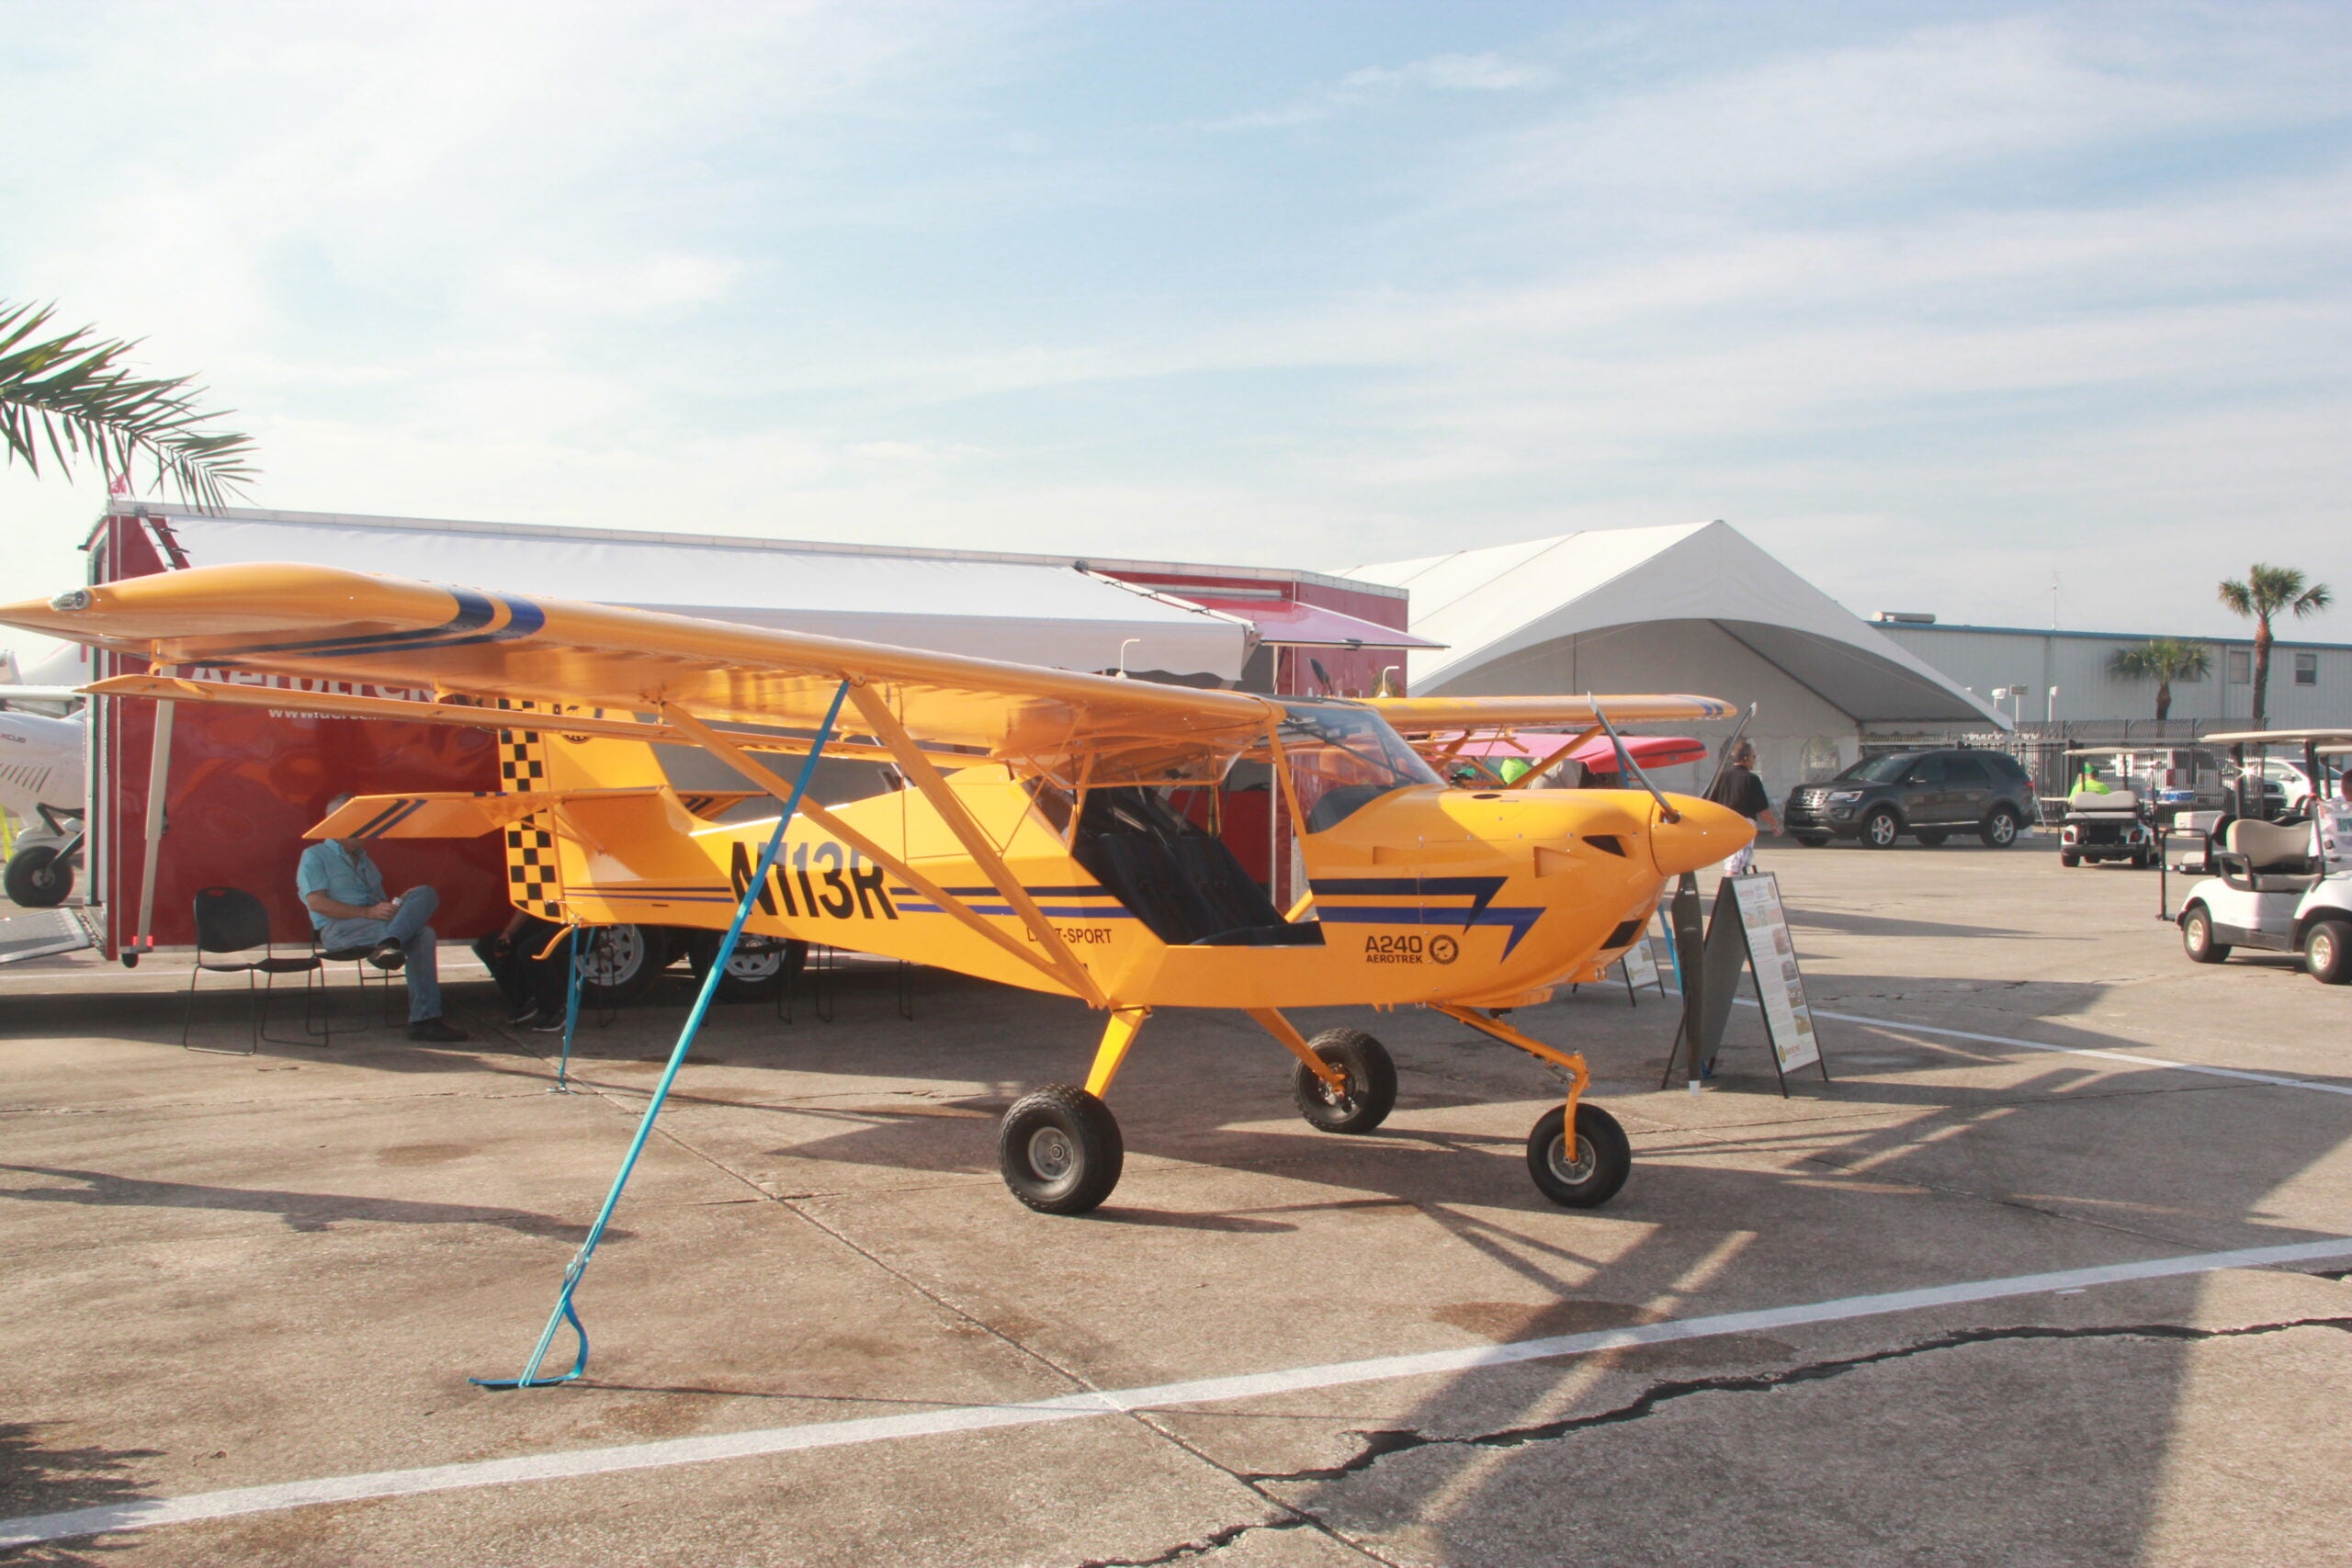 Sebring US Sport Aviation Expo